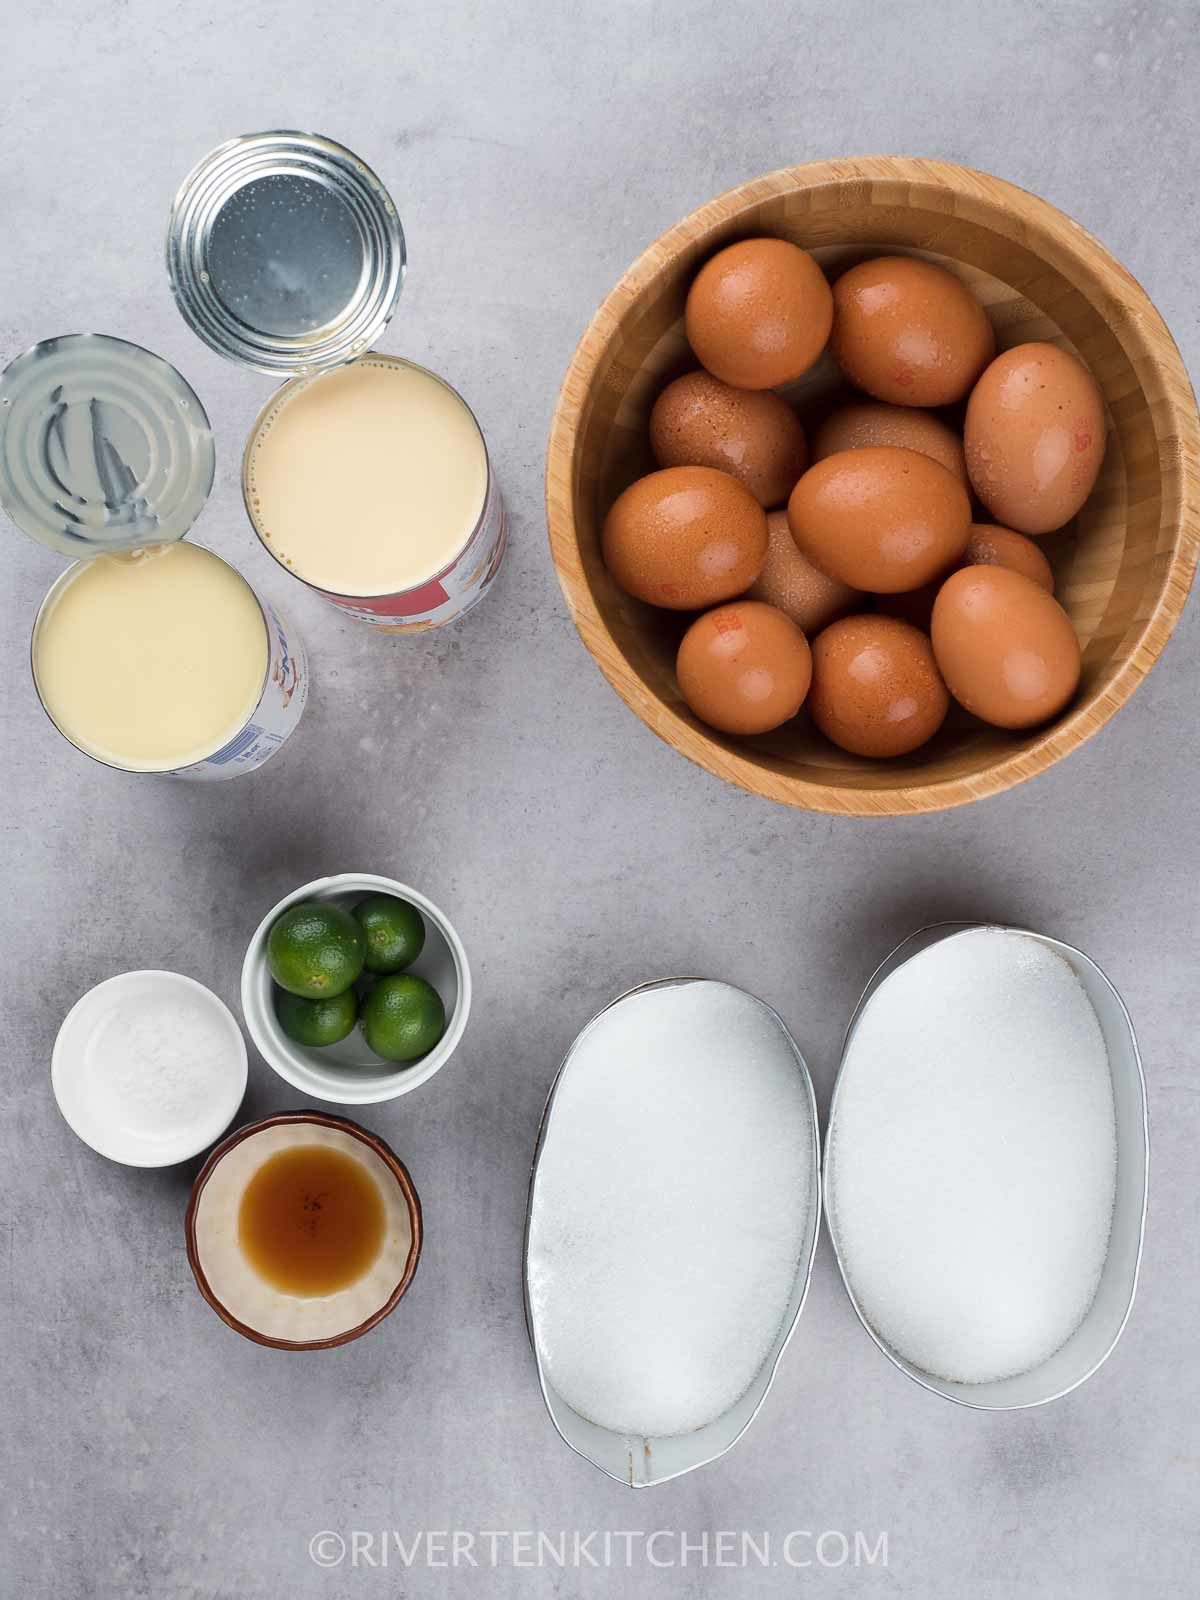 Leche Flan Ingredients - evaporated milk, condensed milk, eggs, sugar, vanilla, salt